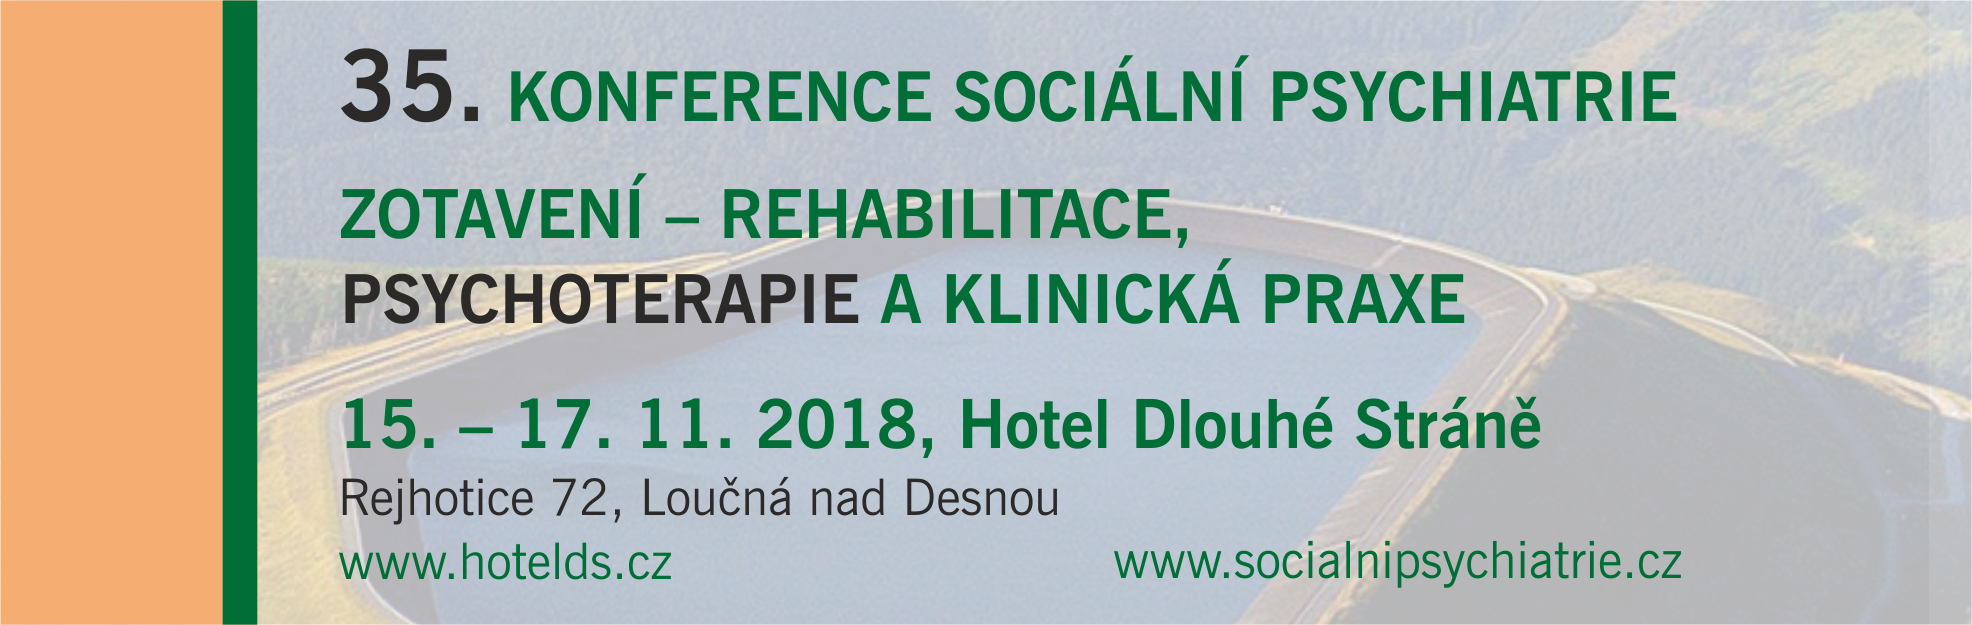 35. Konference sociální psychiatrie - 2. oznámení